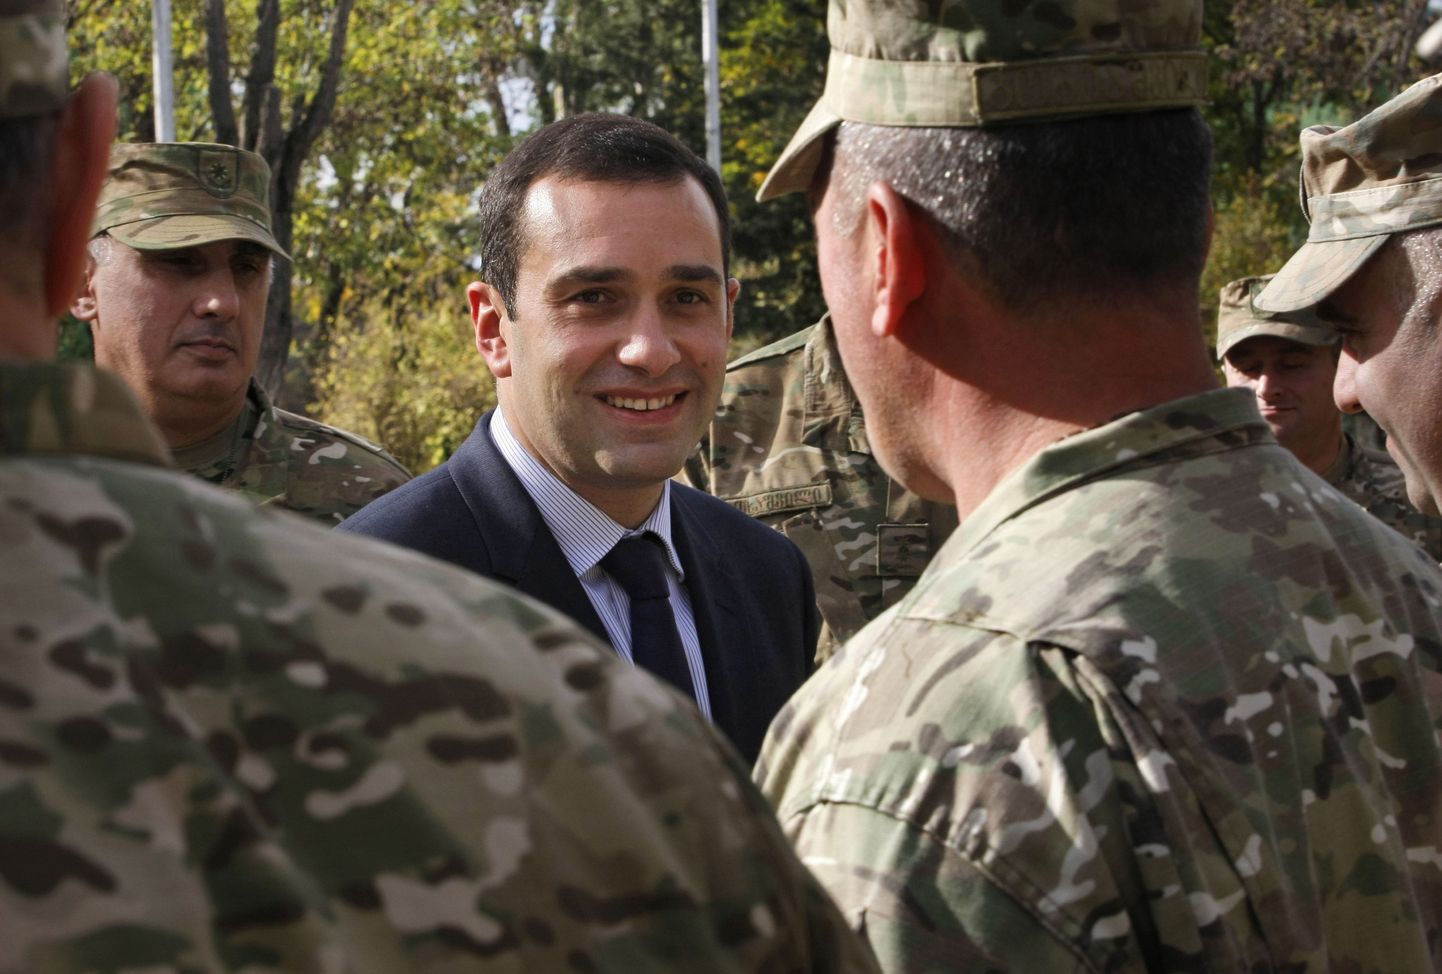 Gruusia kaitseminister Irakli Alasania vestleb sõduritega Thbilisi lähedal asuvas Mukrovani sõjaväebaasis.